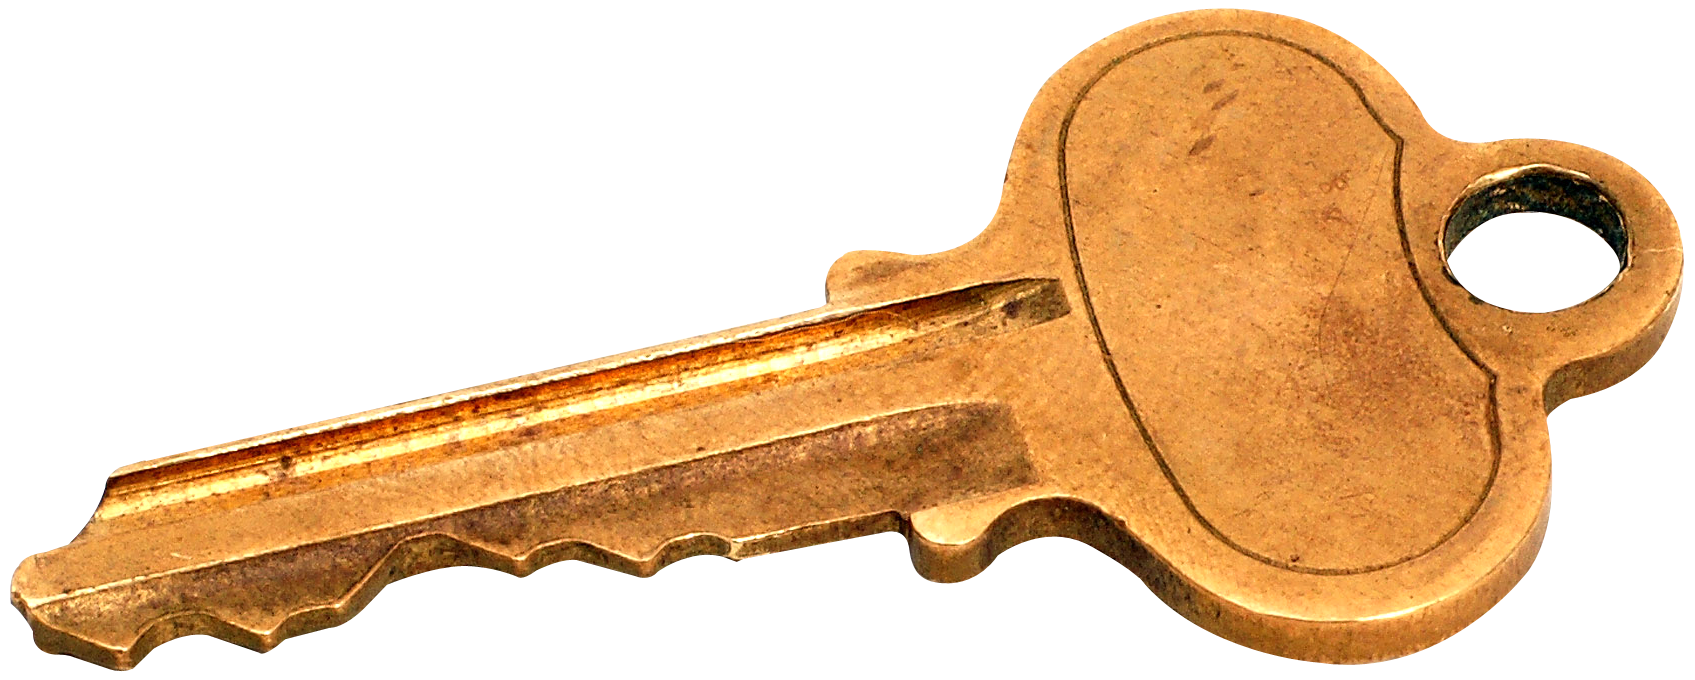 Old Key PNG Transparent Image